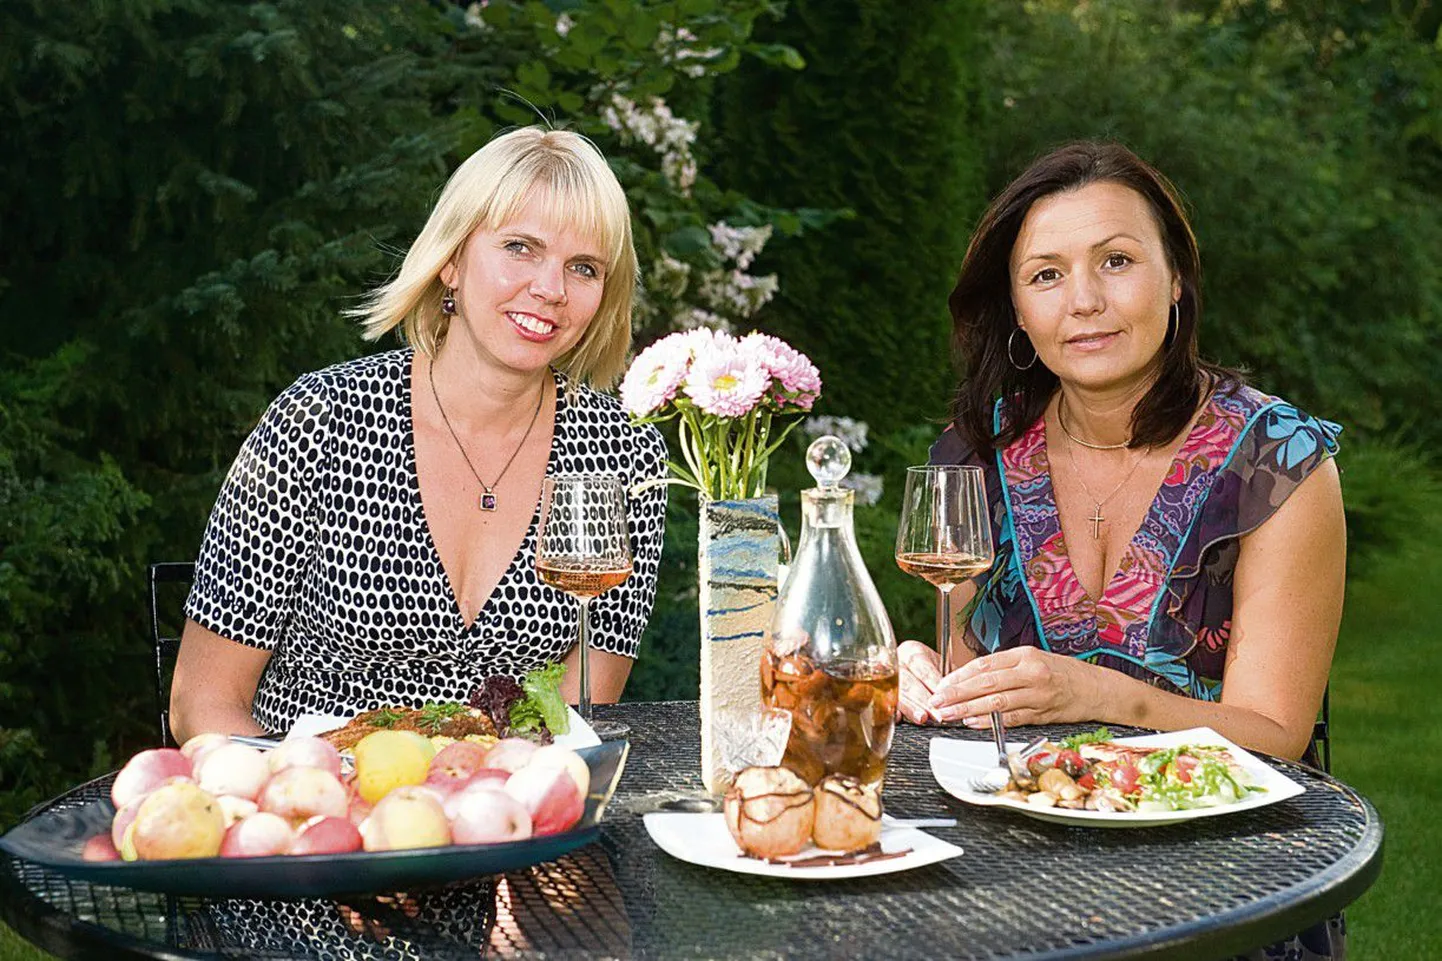 Hõbelusika-naised: Anu Laineste (vasakul) ja Margit Kirsipuu kiidavad, et sügis on kokkamiseks ja Eesti köögi nautimiseks üks paremaid aegu.